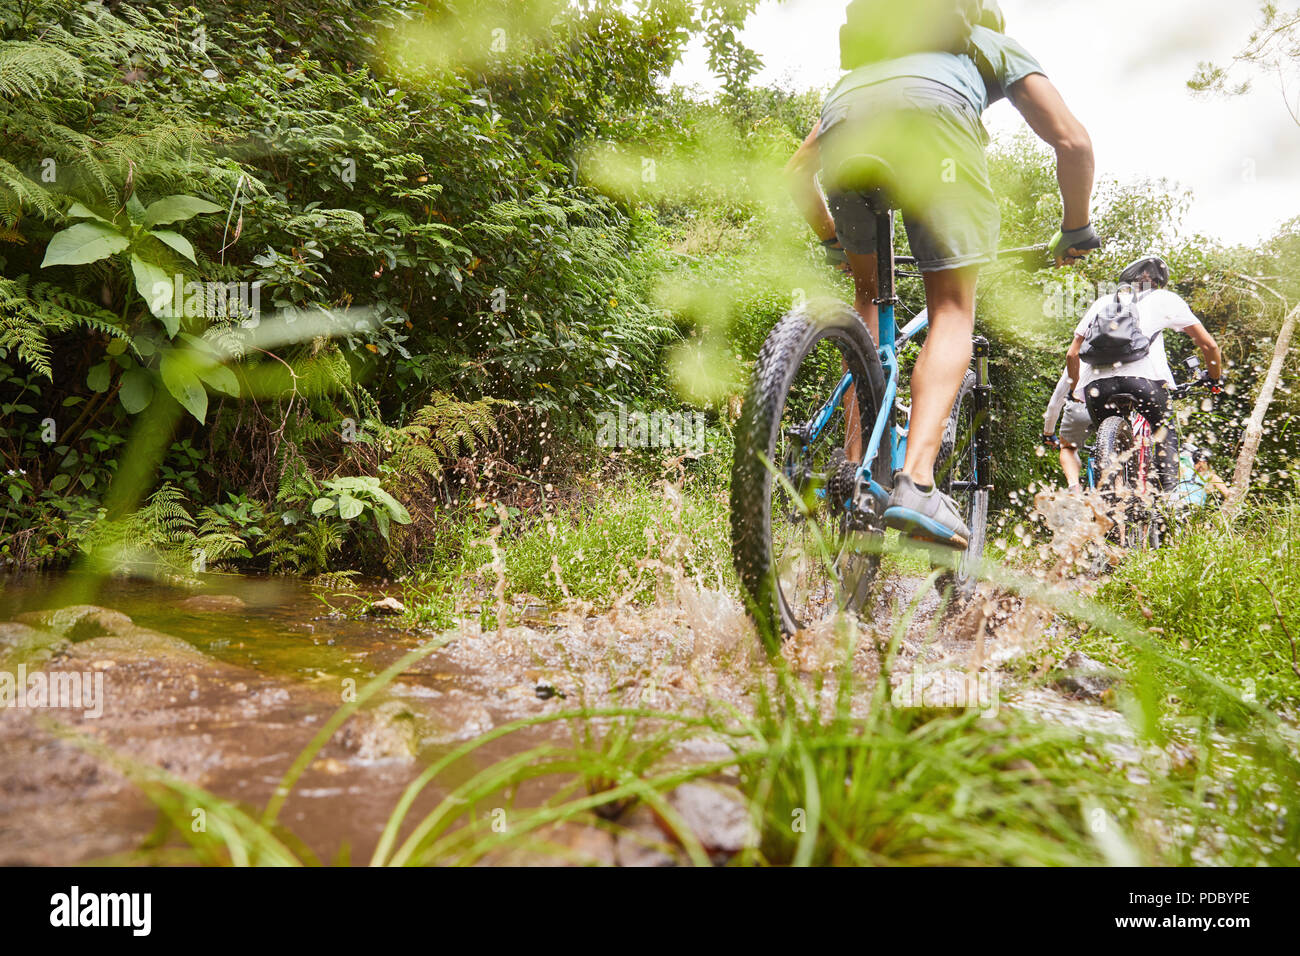 Man mountain biking, splashing on muddy trail Stock Photo